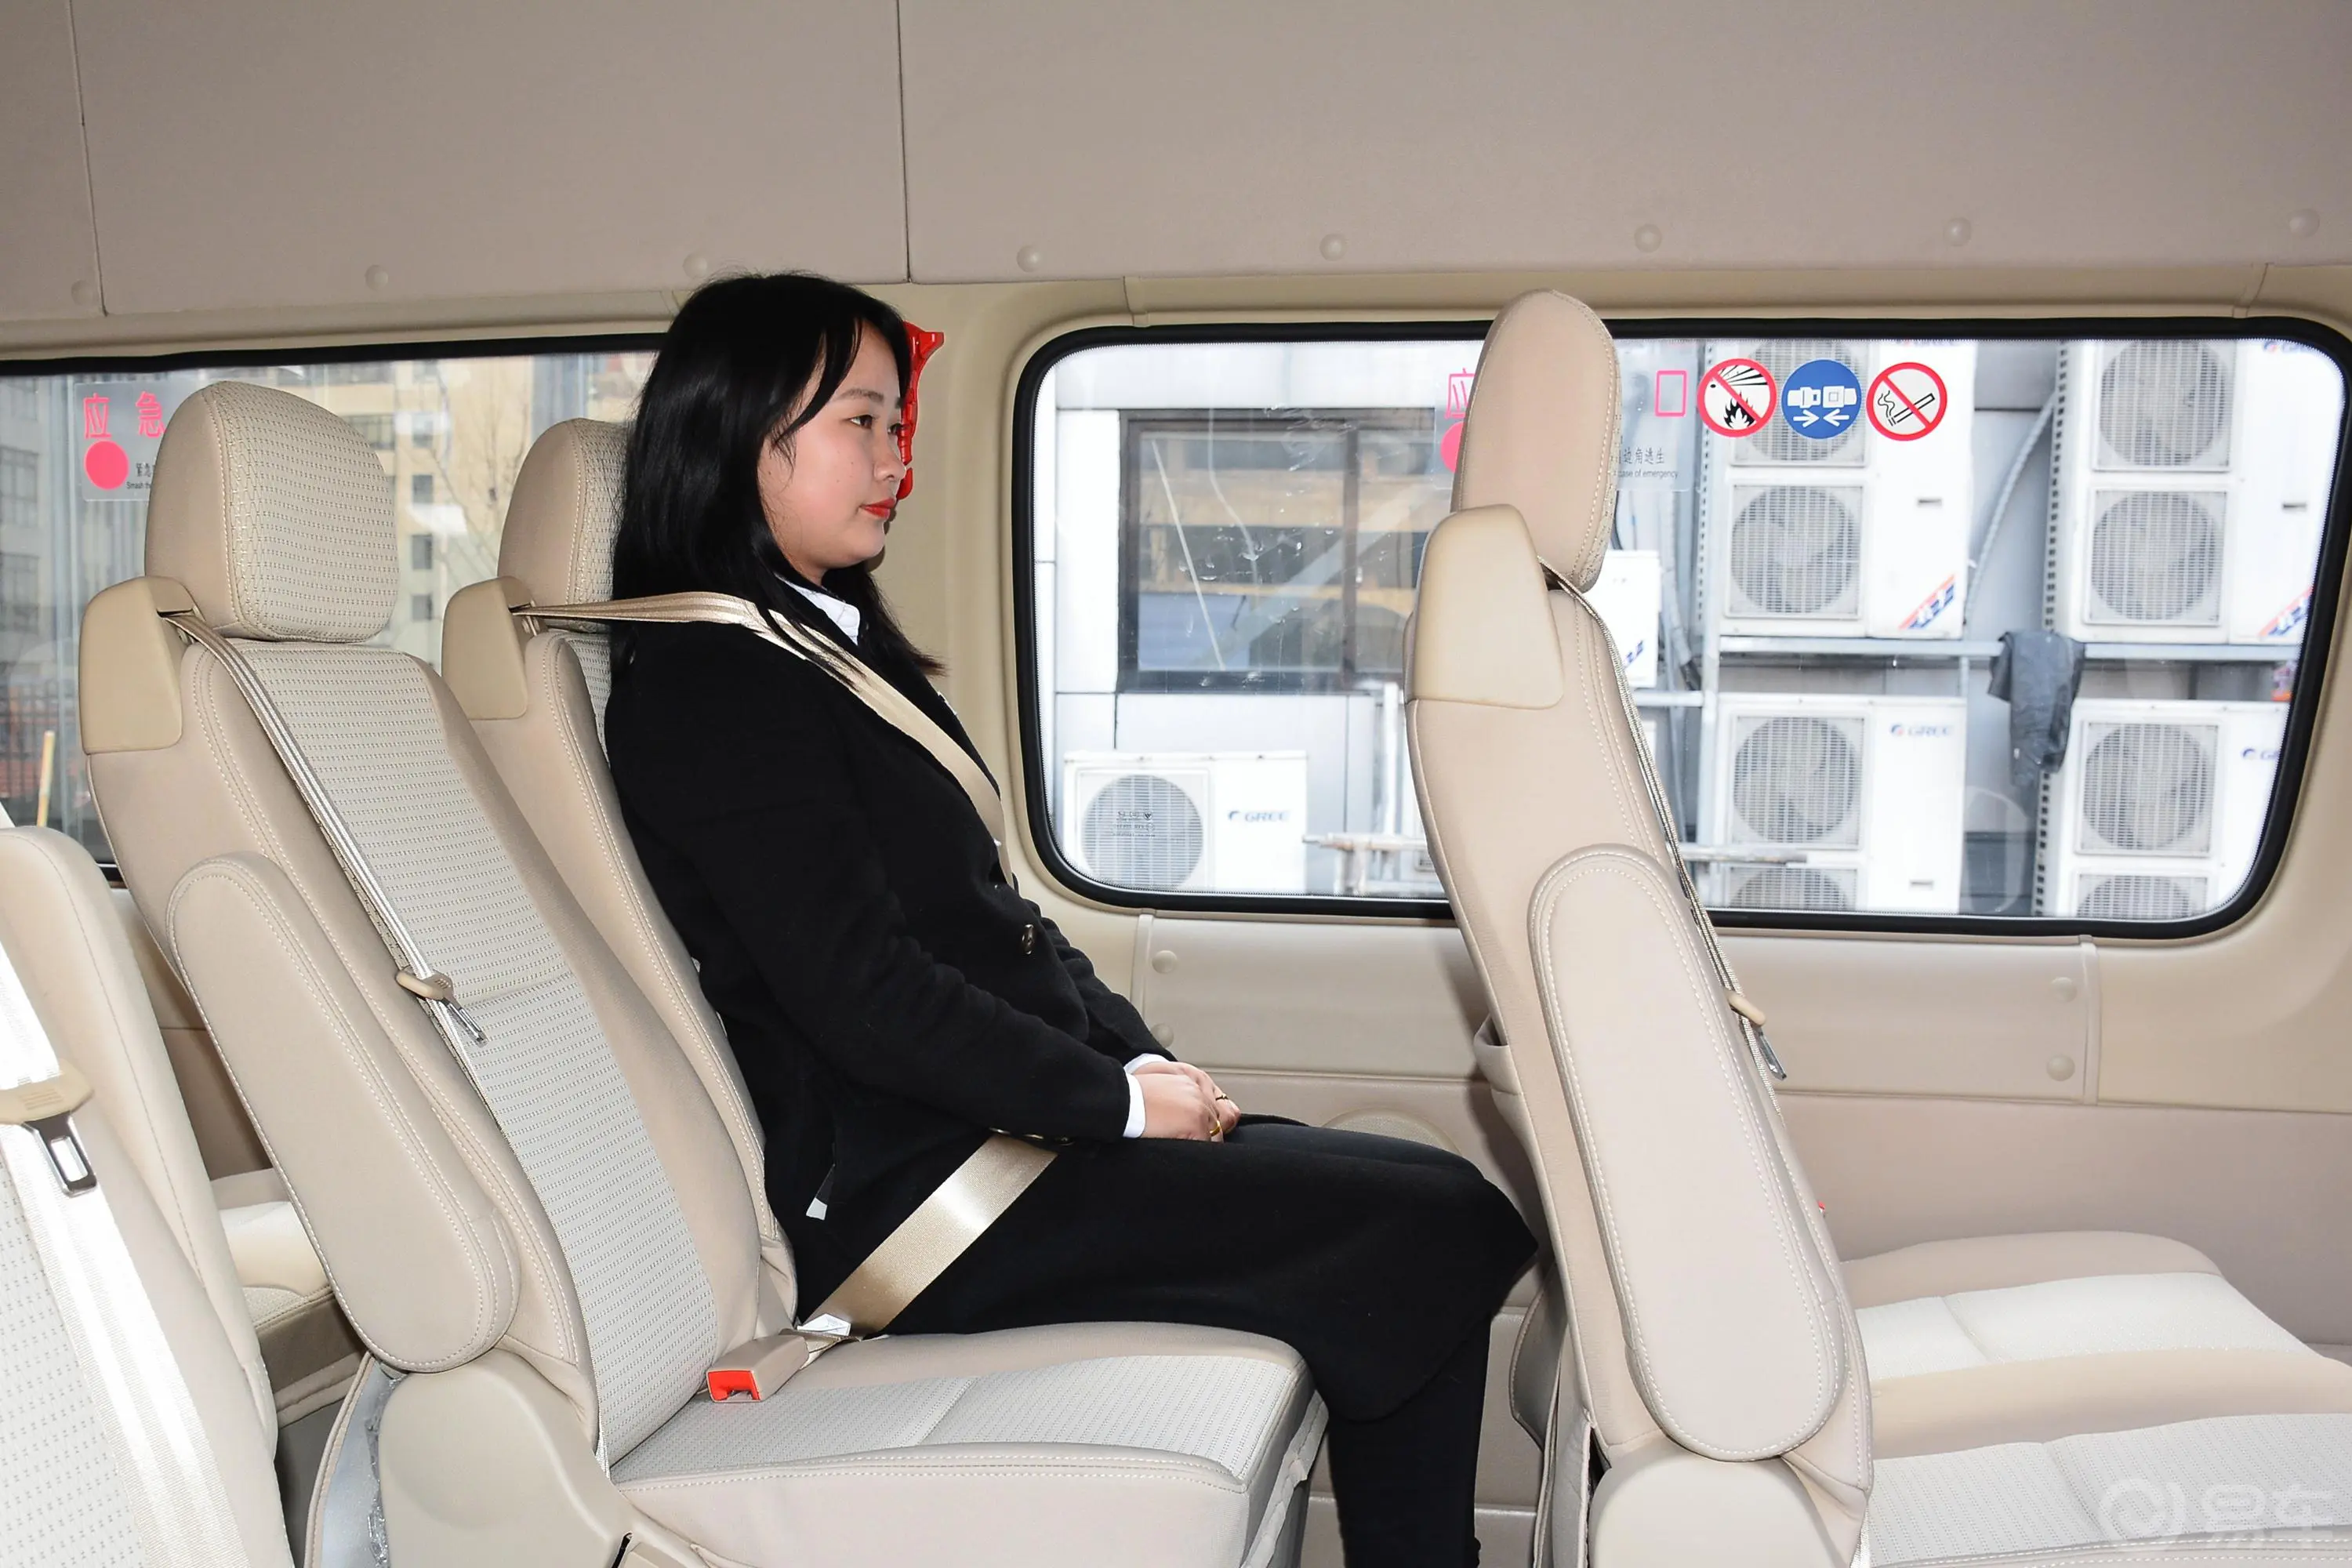 图雅诺商旅版小客 康明斯 2.8T 手动加长轴新高顶高级客车 14座第三排空间体验